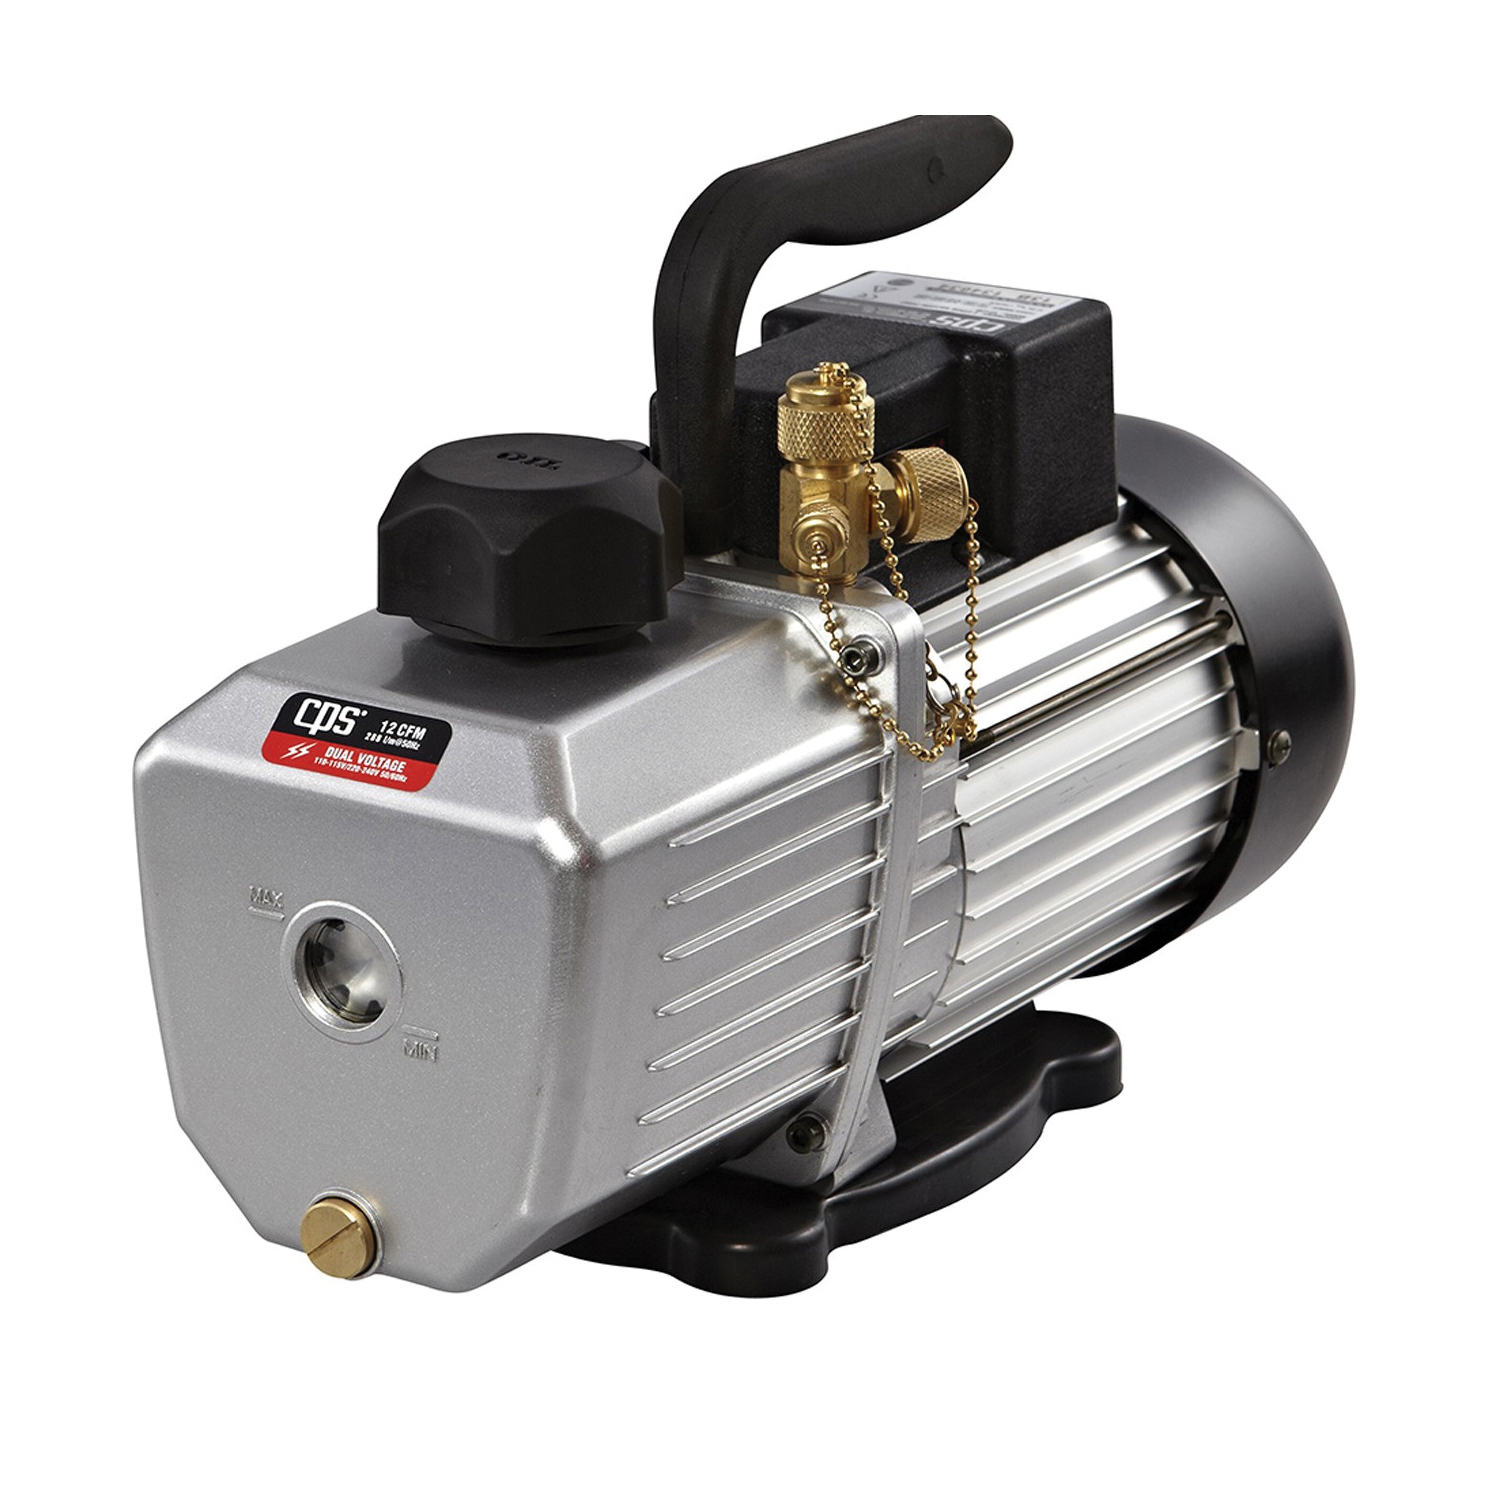 CPS® PRO-SET® VP12D Vacuum Pump, 110 to 120/220 V, 1 hp, 1/4 x 3/8 x 1/2 in Connection, 12 cfm, 10 um Max Vacuum